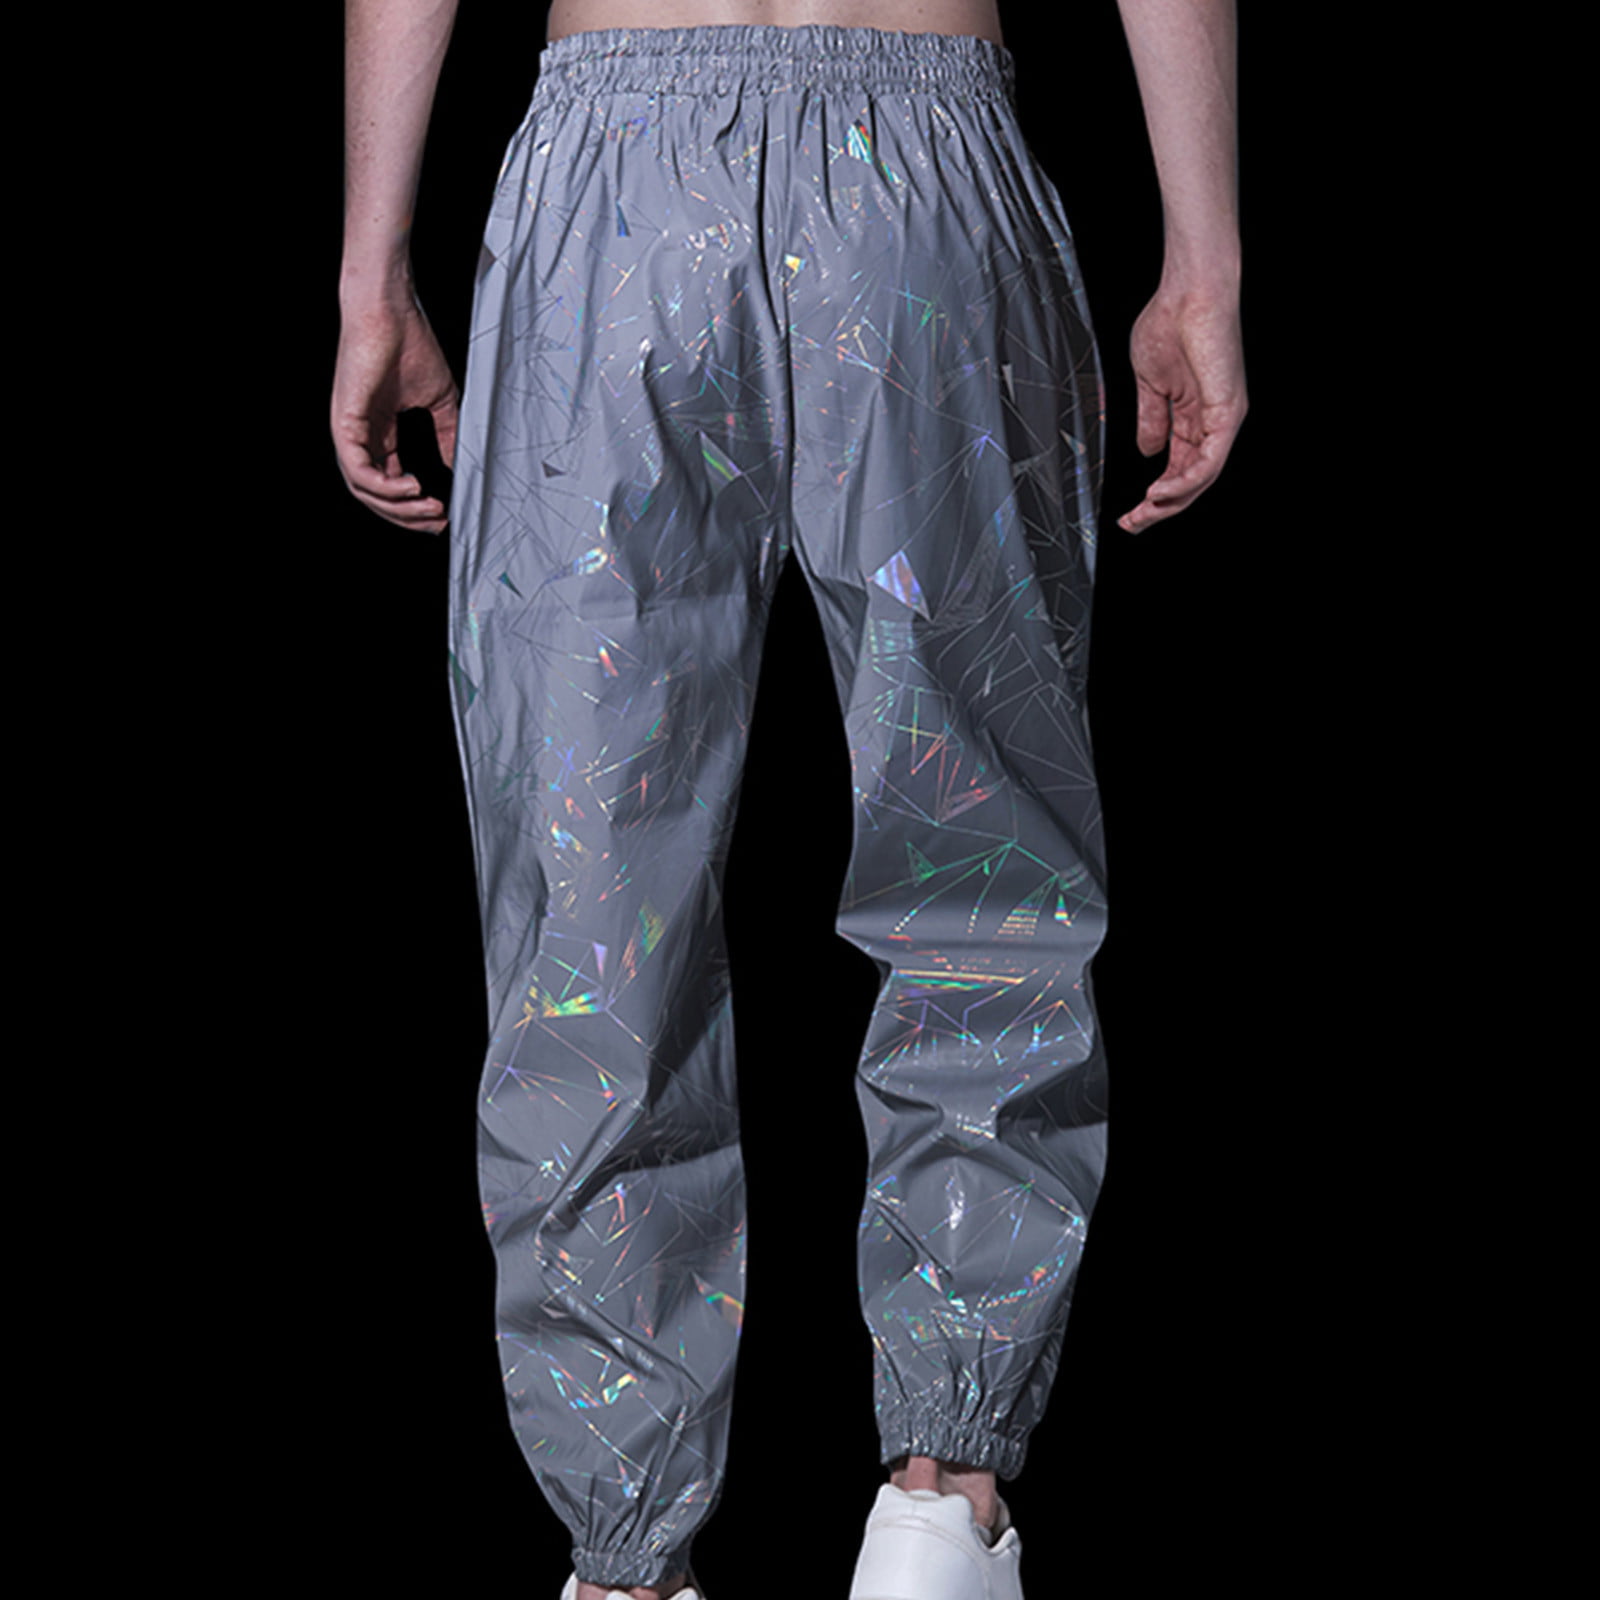 Balenciaga Silver Reflective Track Pants for Men